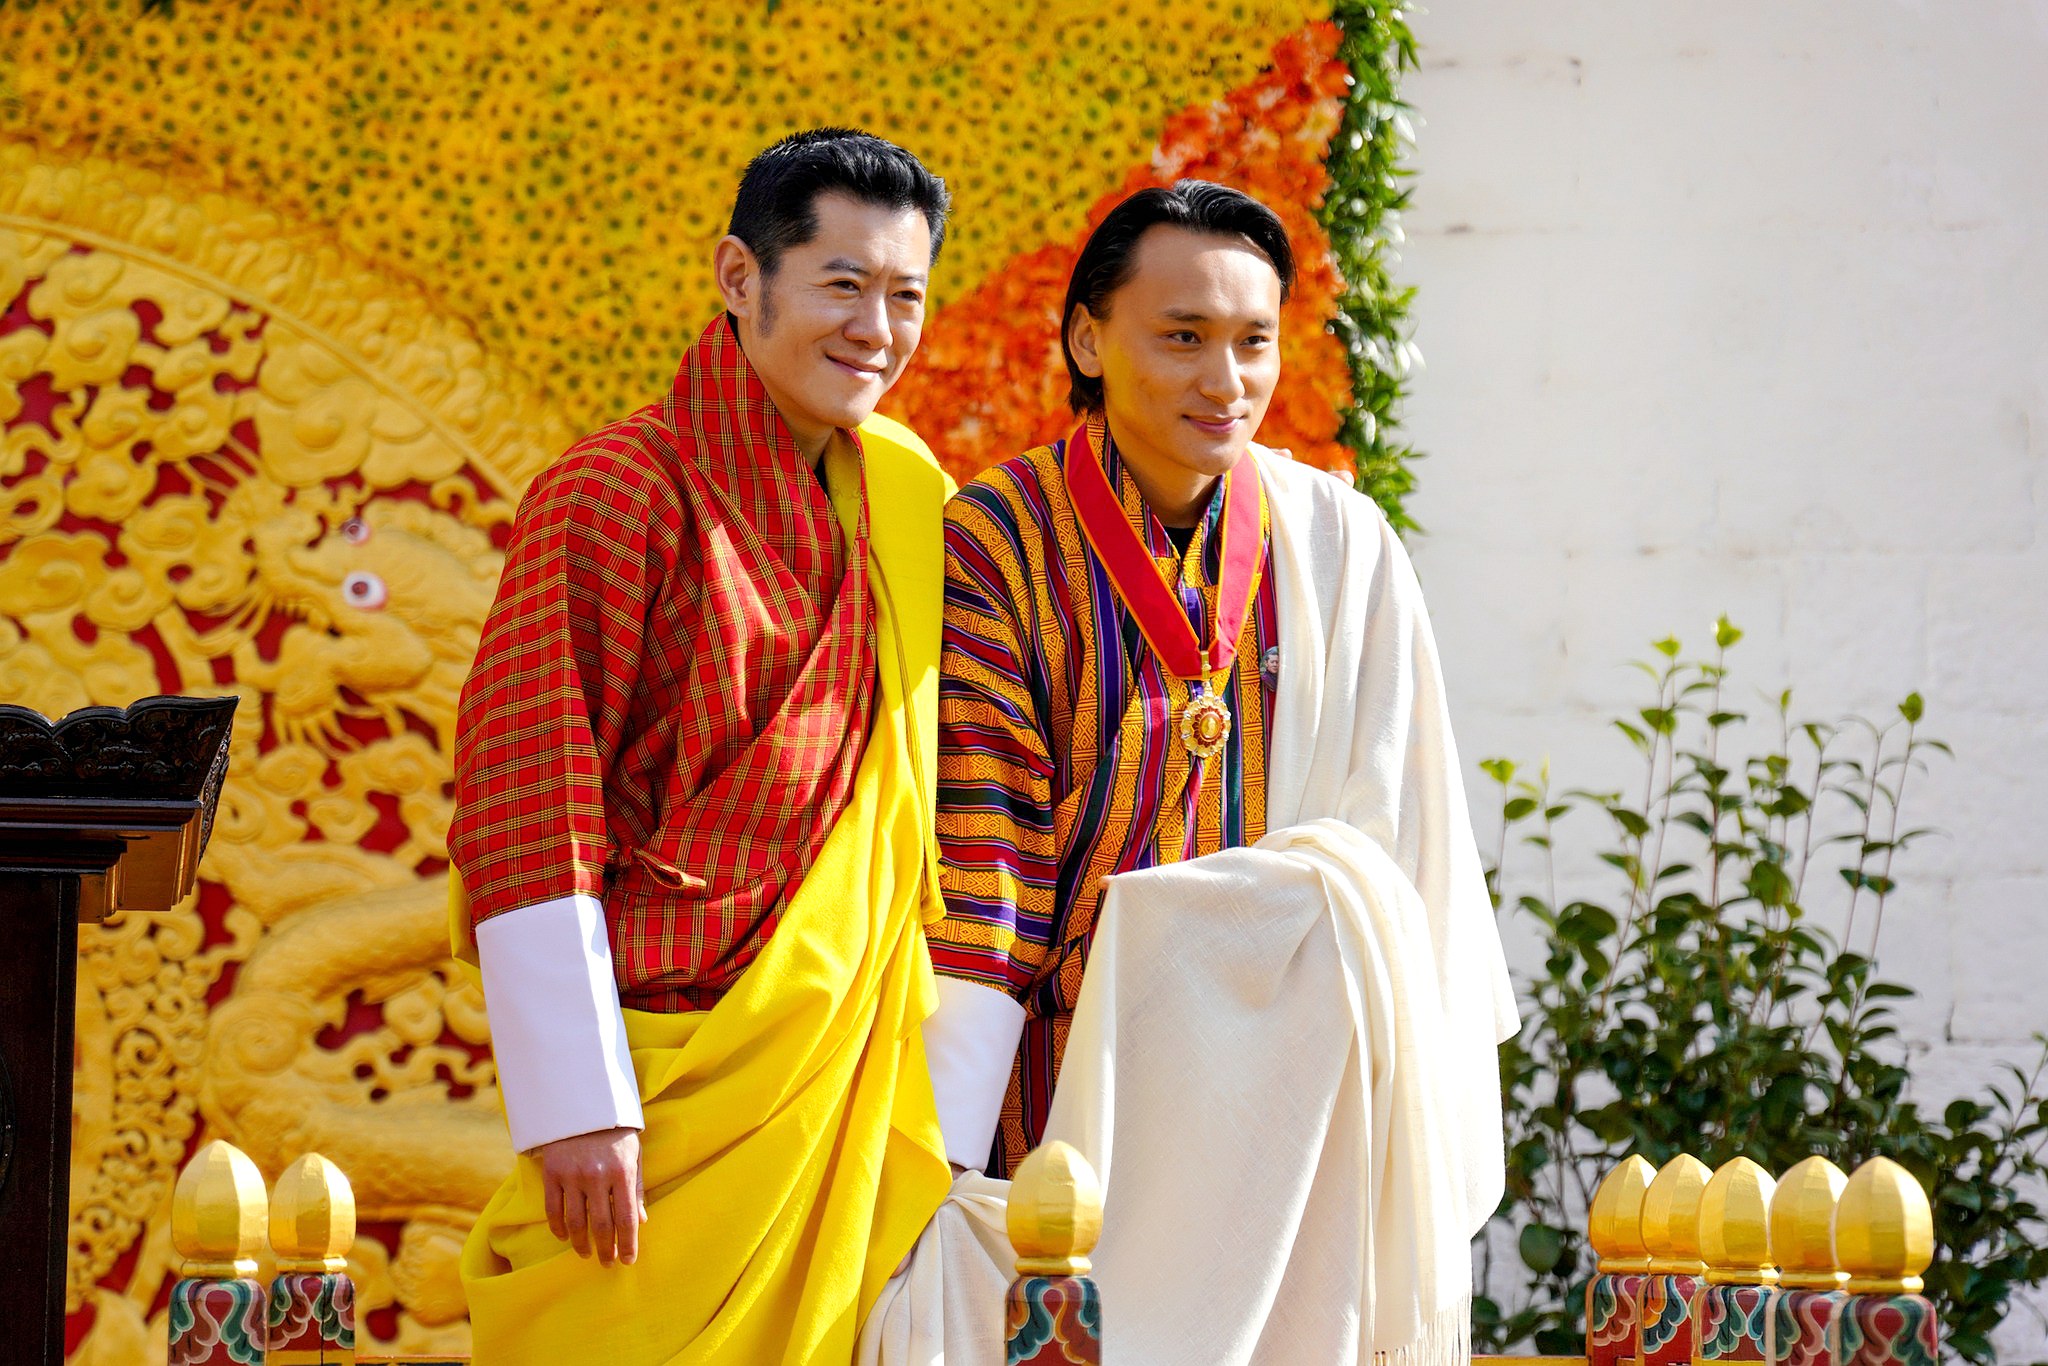 由国王亲自授奖不丹导演巴沃荣获皇家勋章| 不丹是教室| 巴沃邱宁多杰 